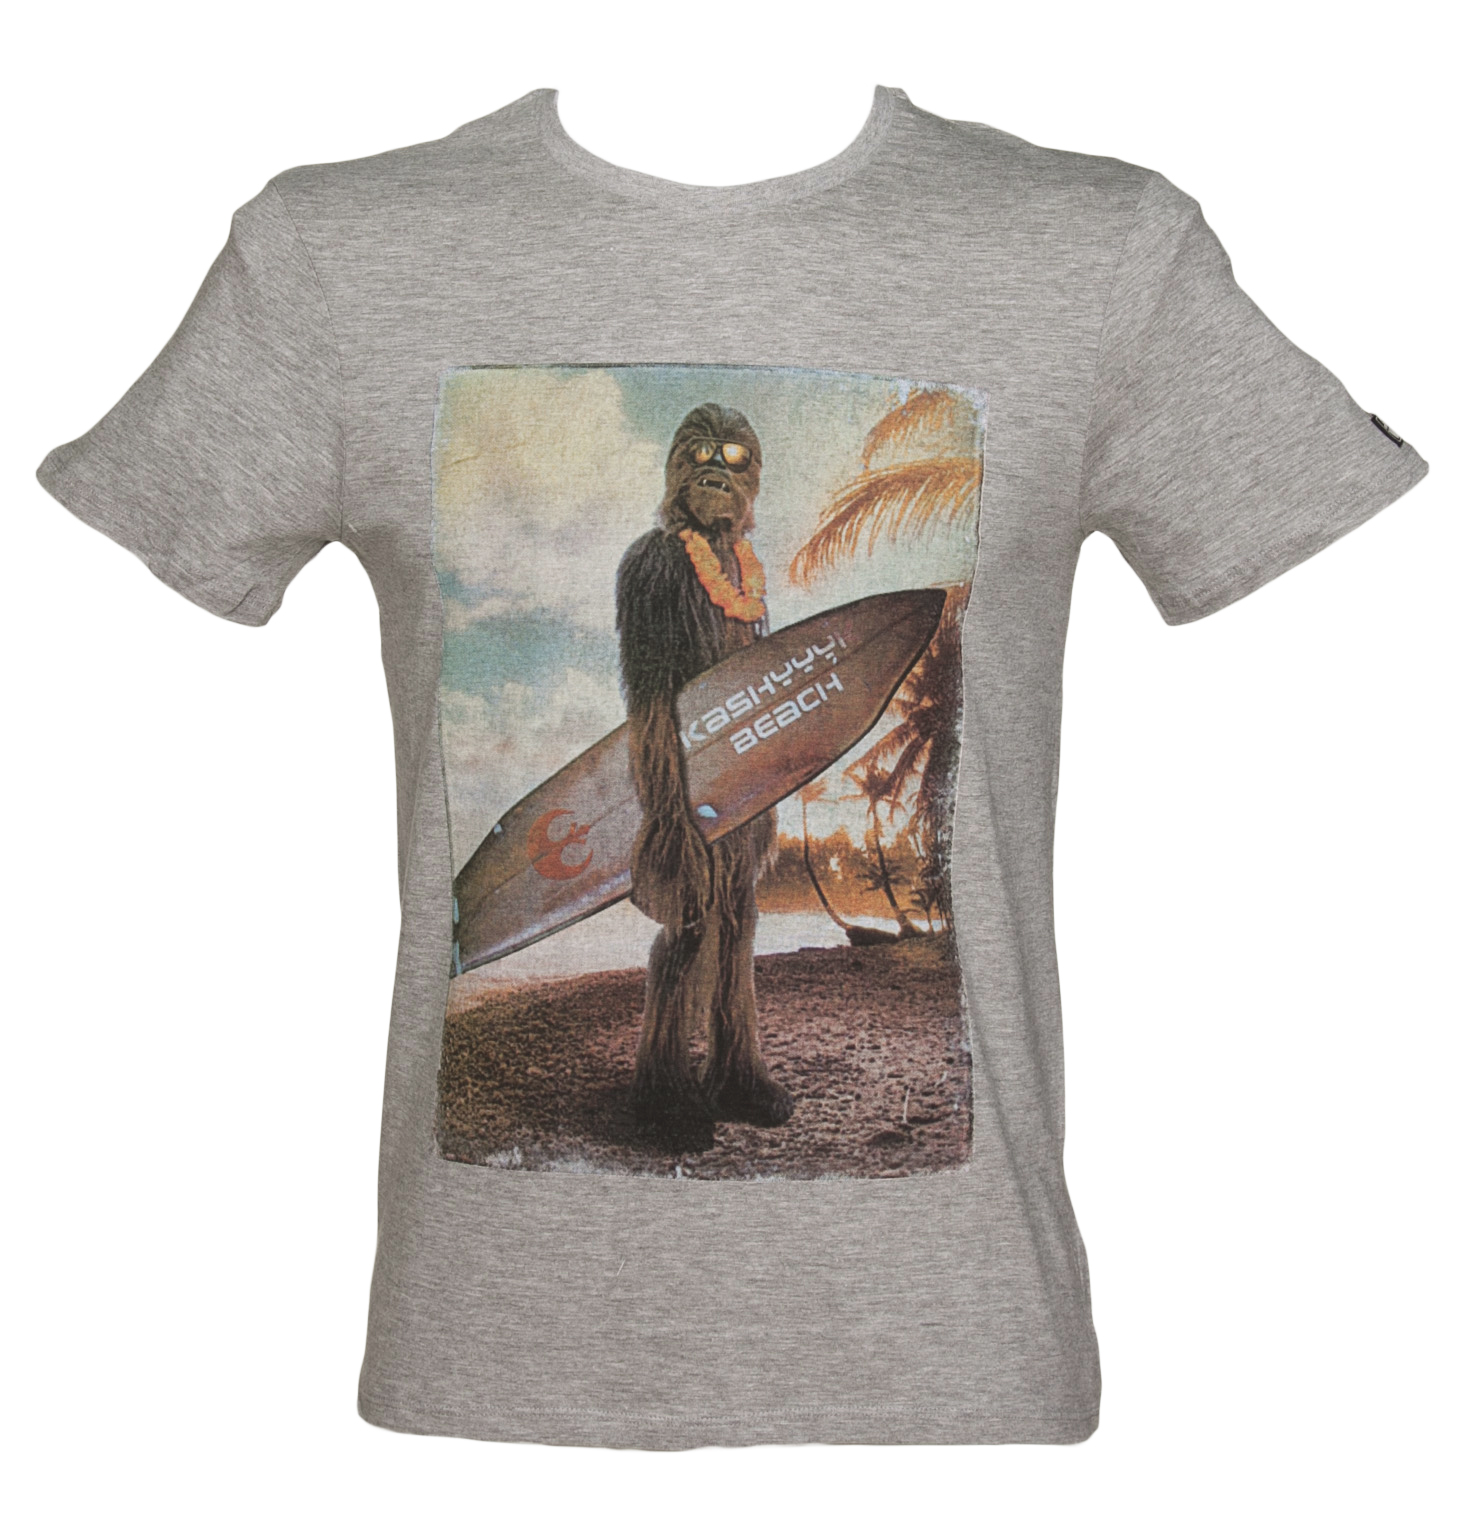 Mens Grey Surfing Wookie Star Wars T-Shirt